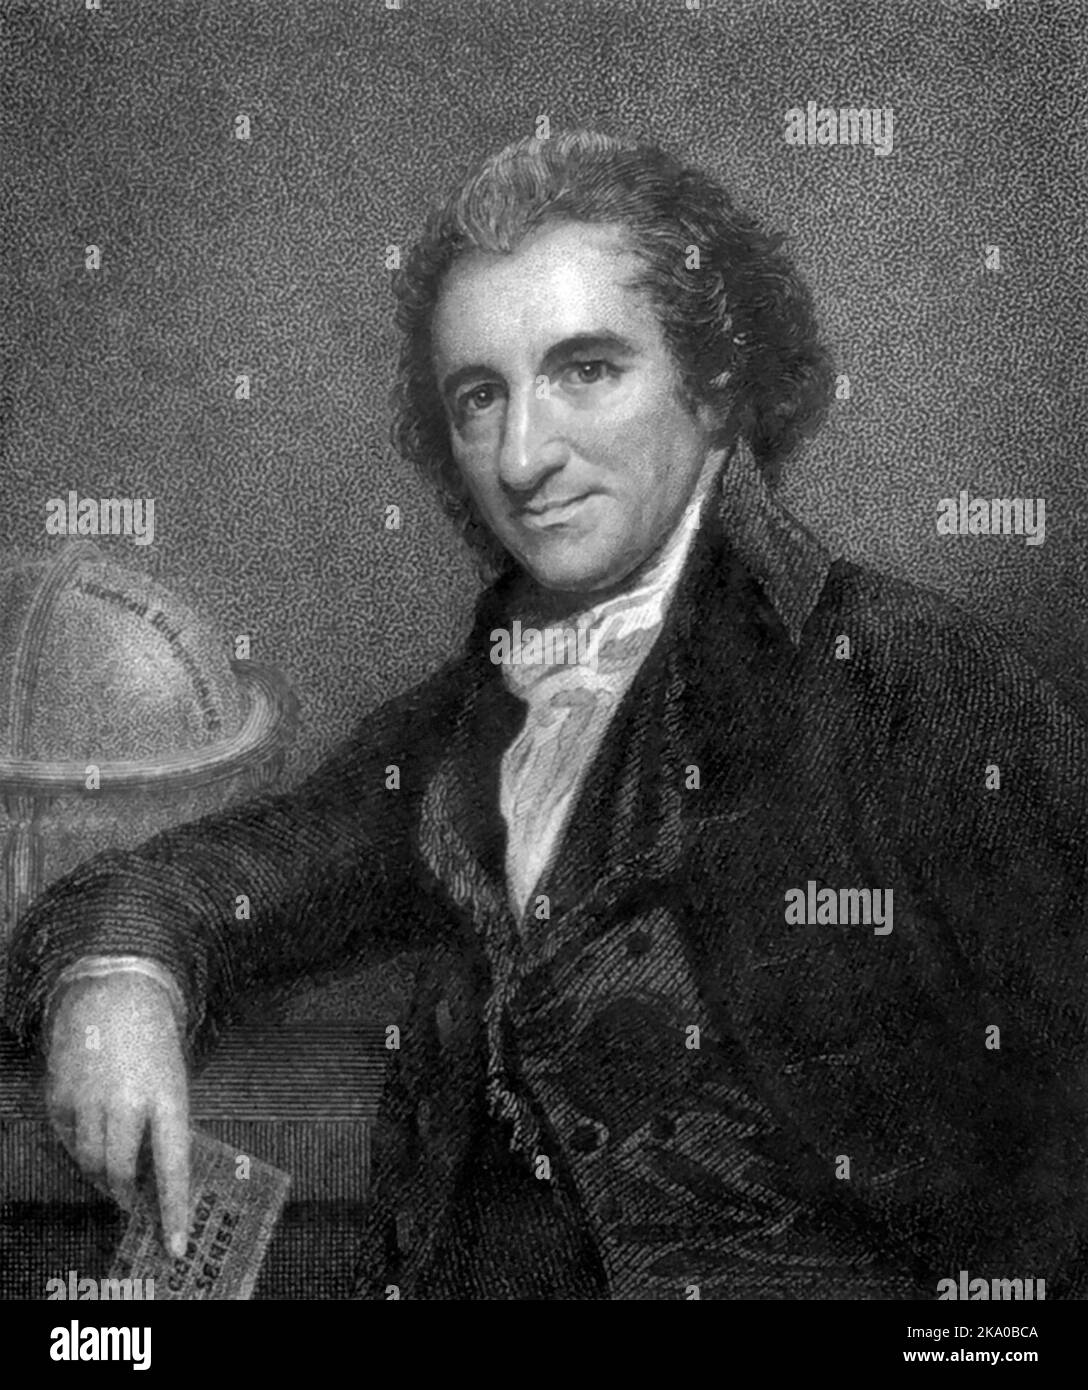 Thomas Paine (1737-1809), activiste politique américain d'origine anglaise, philosophe, théoricien politique et révolutionnaire, auteur de Common Sense (1776) et The American Crisis (1776-1783), deux des pamphlets les plus influents au début de la révolution américaine, Banque D'Images